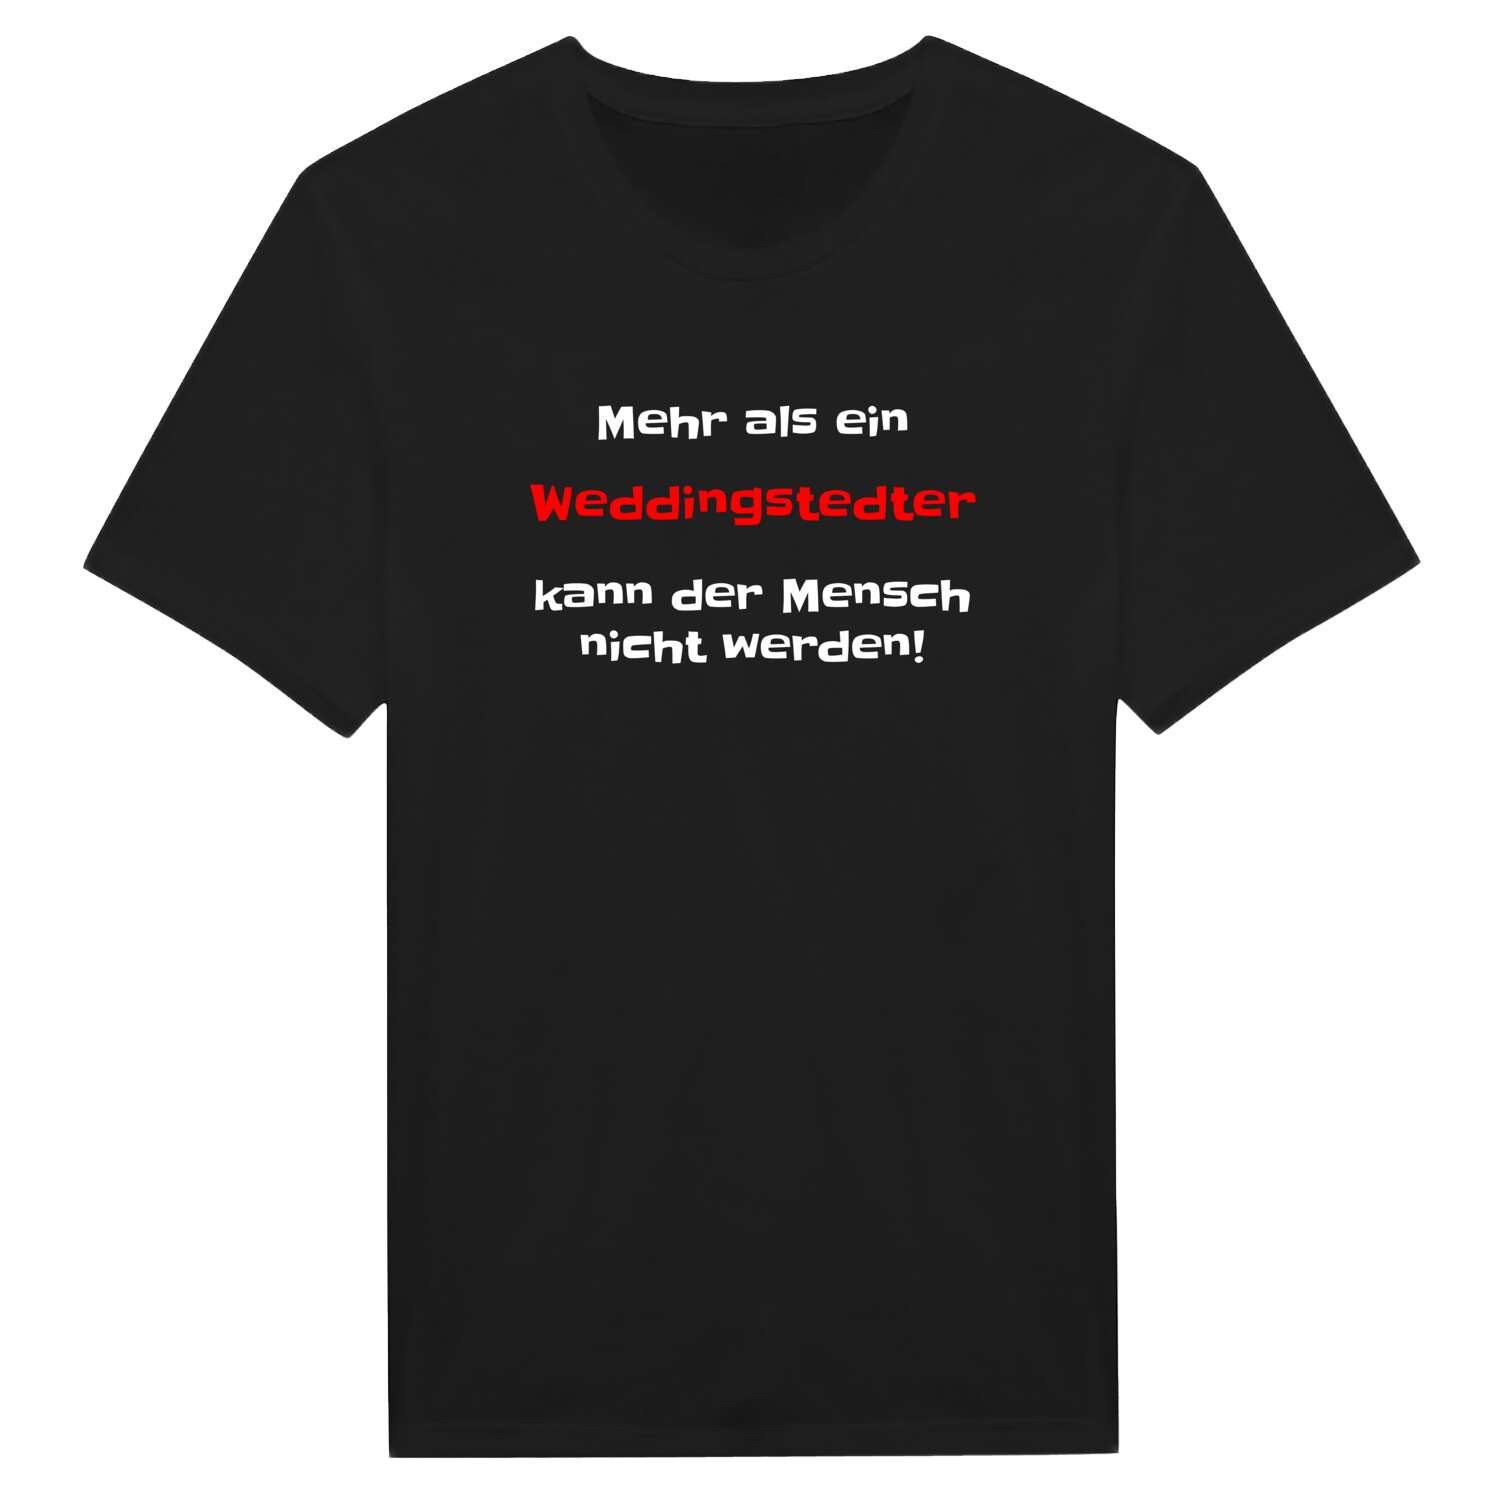 Weddingstedt T-Shirt »Mehr als ein«